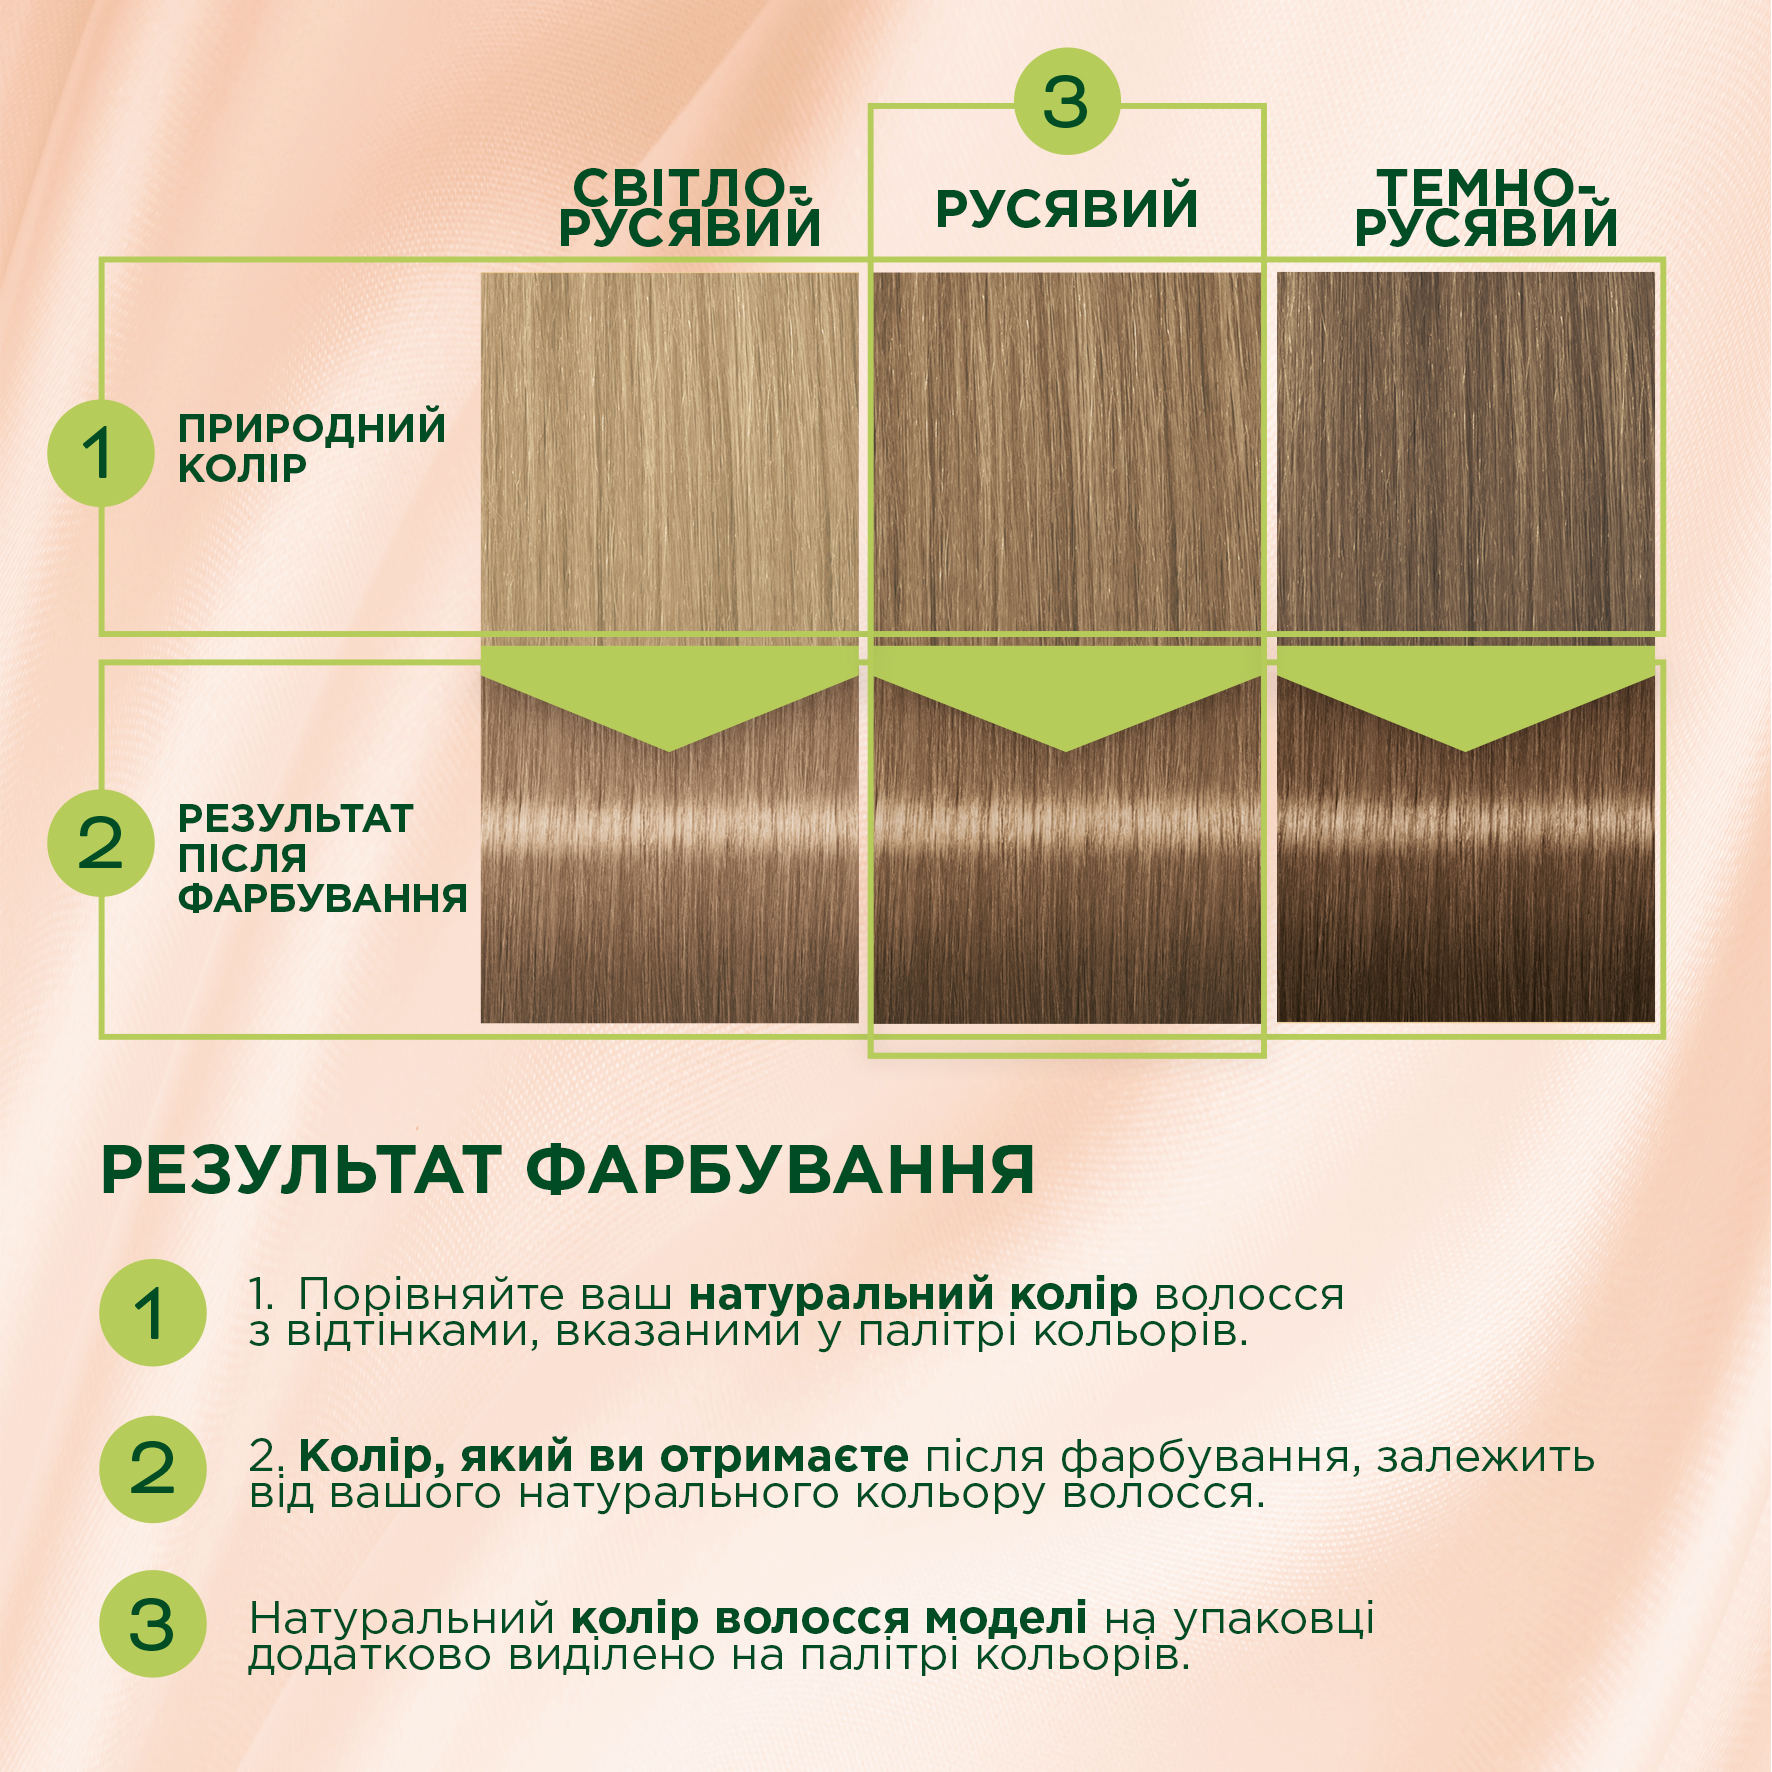 Стійка крем-фарба для волосся Schwarzkopf Palette Naturals, без аміаку, 9-1 Холодний світло-русявий, 110 мл - фото 3